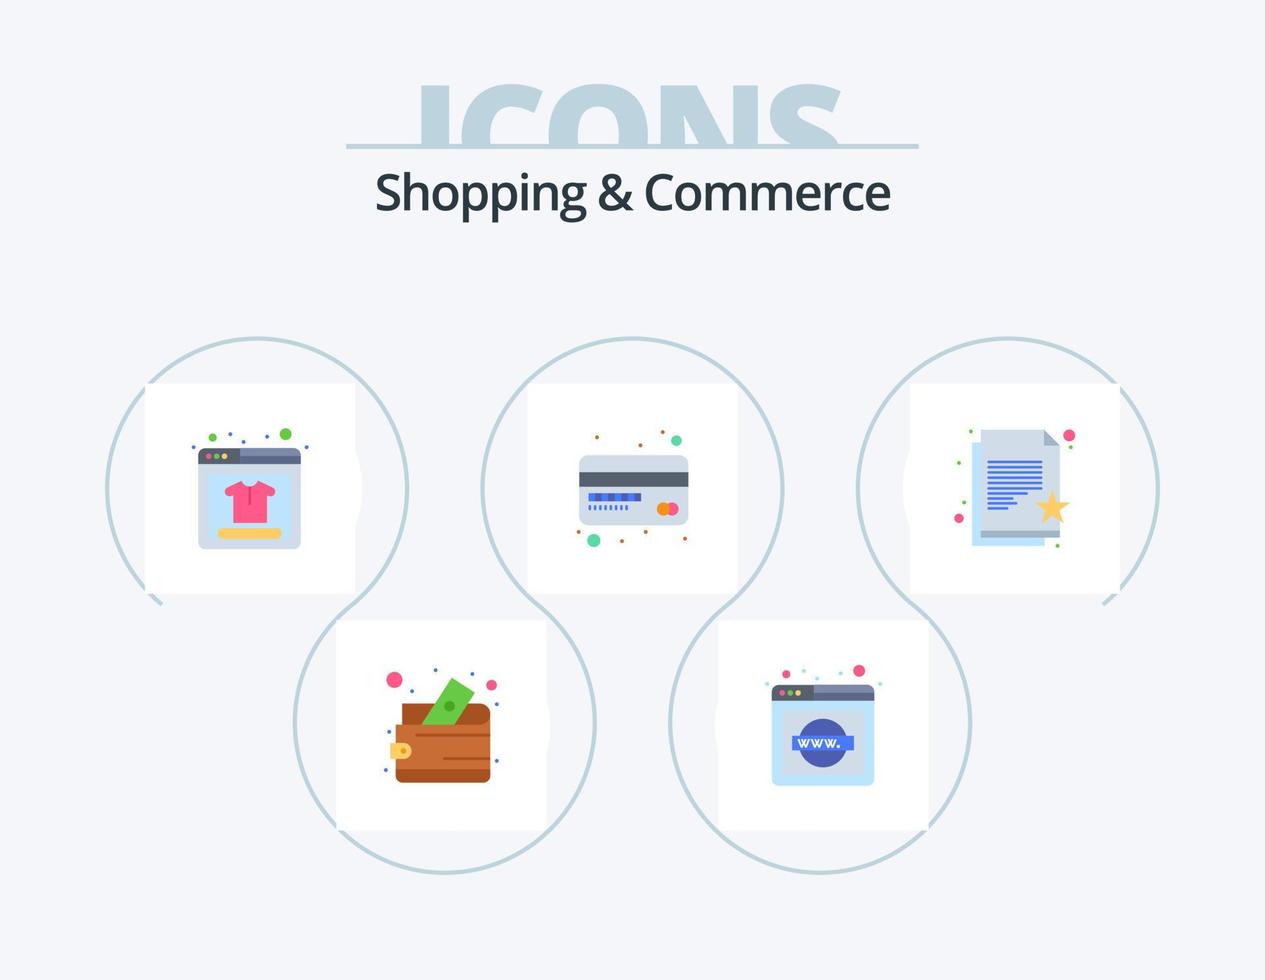 Compras y comercio paquete de iconos planos 5 diseño de iconos. lista de deseos papel favorito. producto en línea documento favorito. tarjeta de débito vector